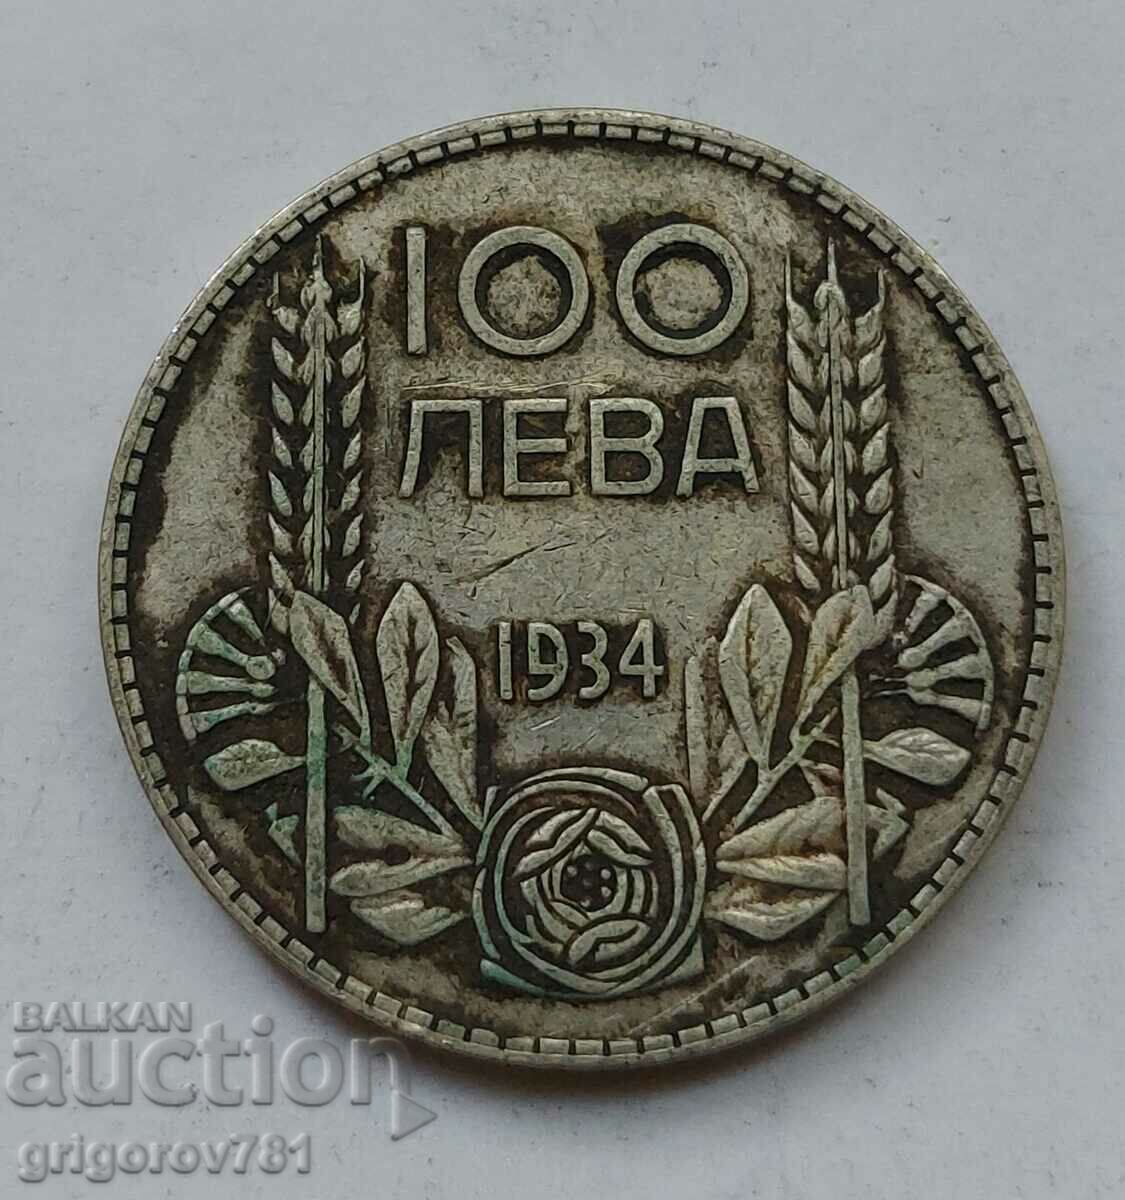 100 leva silver Bulgaria 1934 - silver coin #74